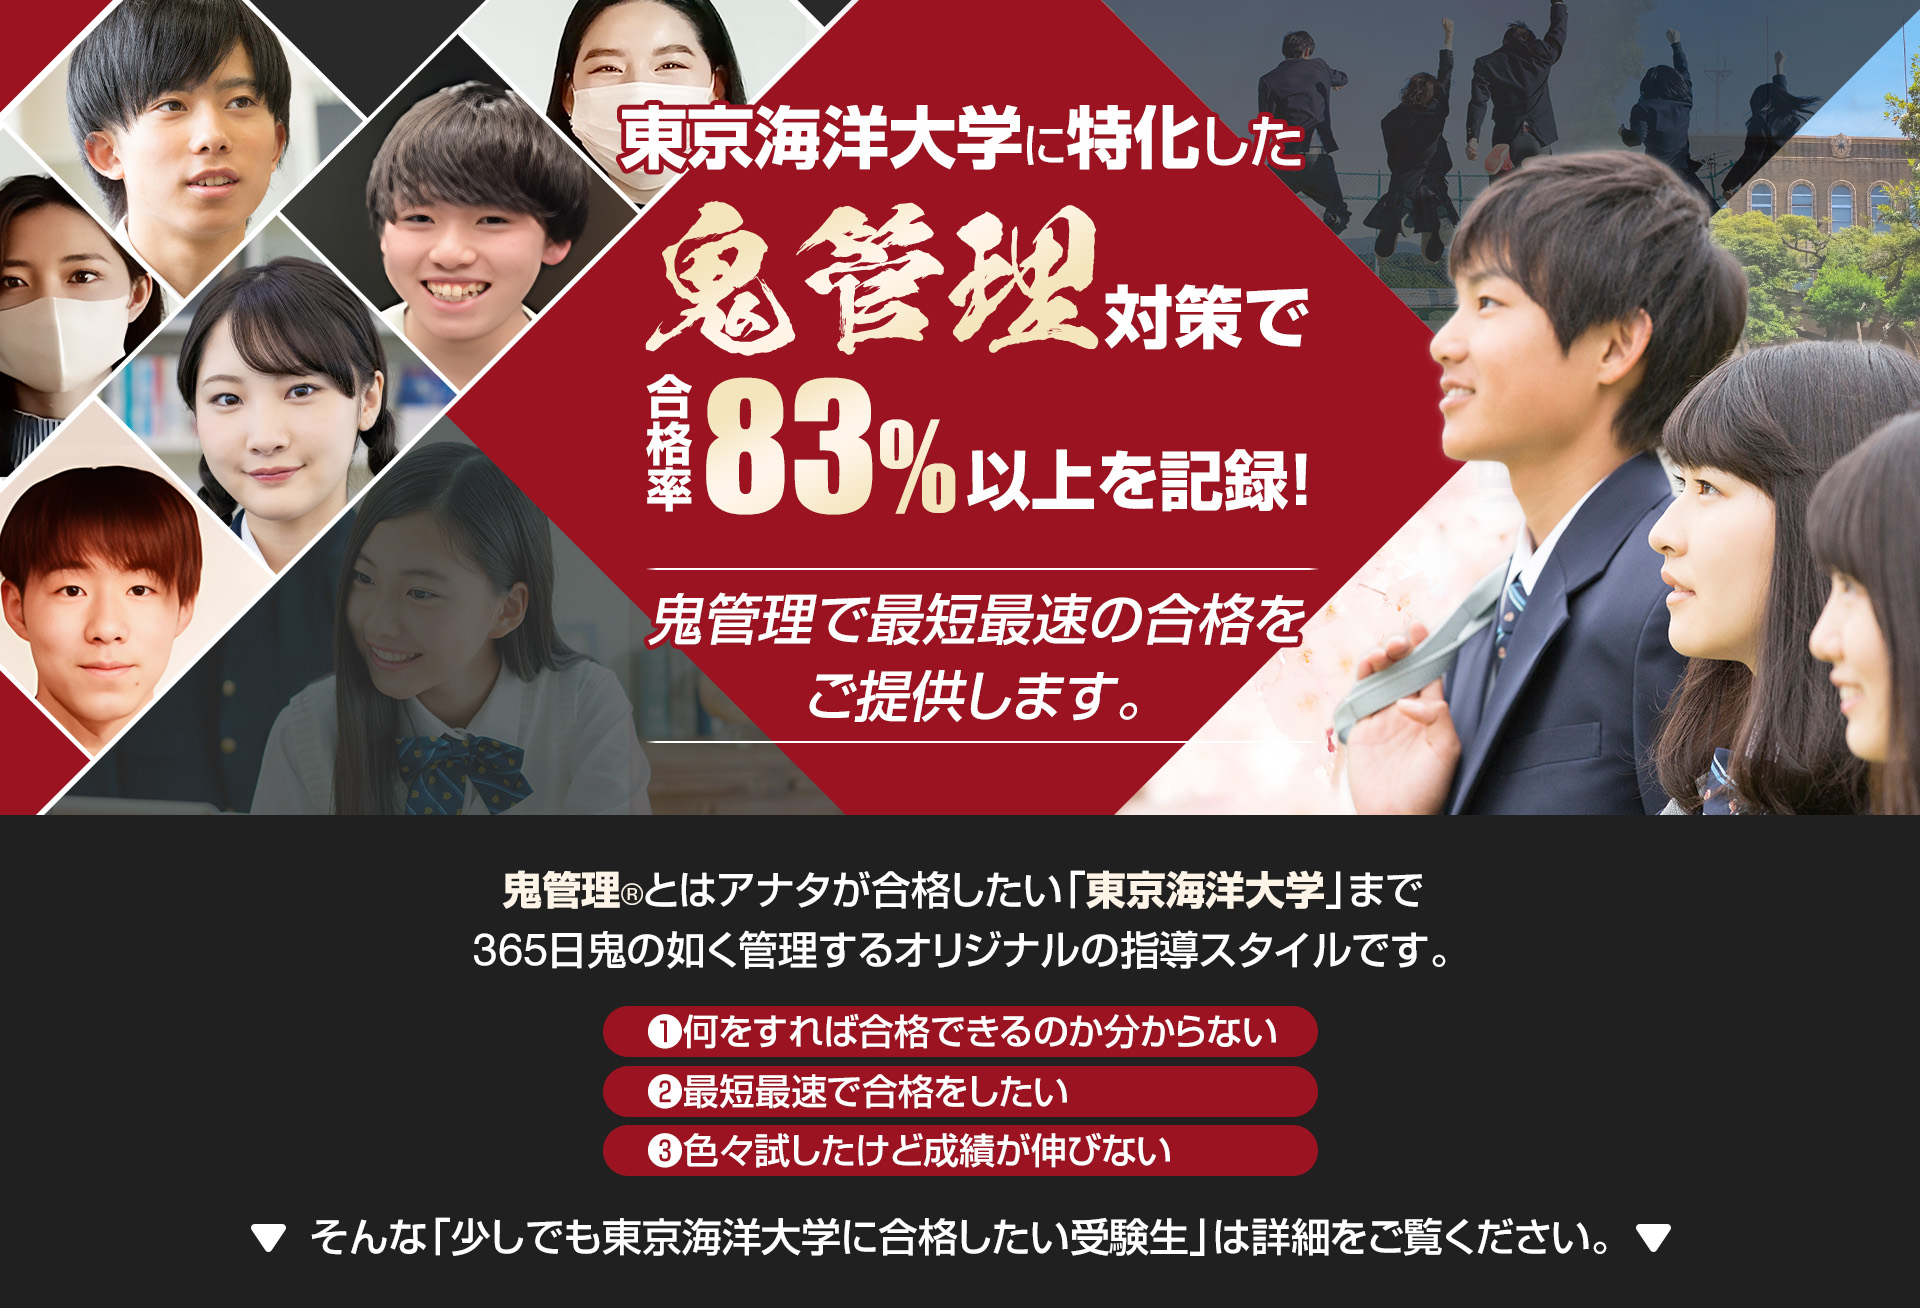 東京海洋大学に特化した鬼管理対策で合格率83％以上を記録。鬼管理でアナタが合格したい東京海洋大学への最短最速の合格を提供します。